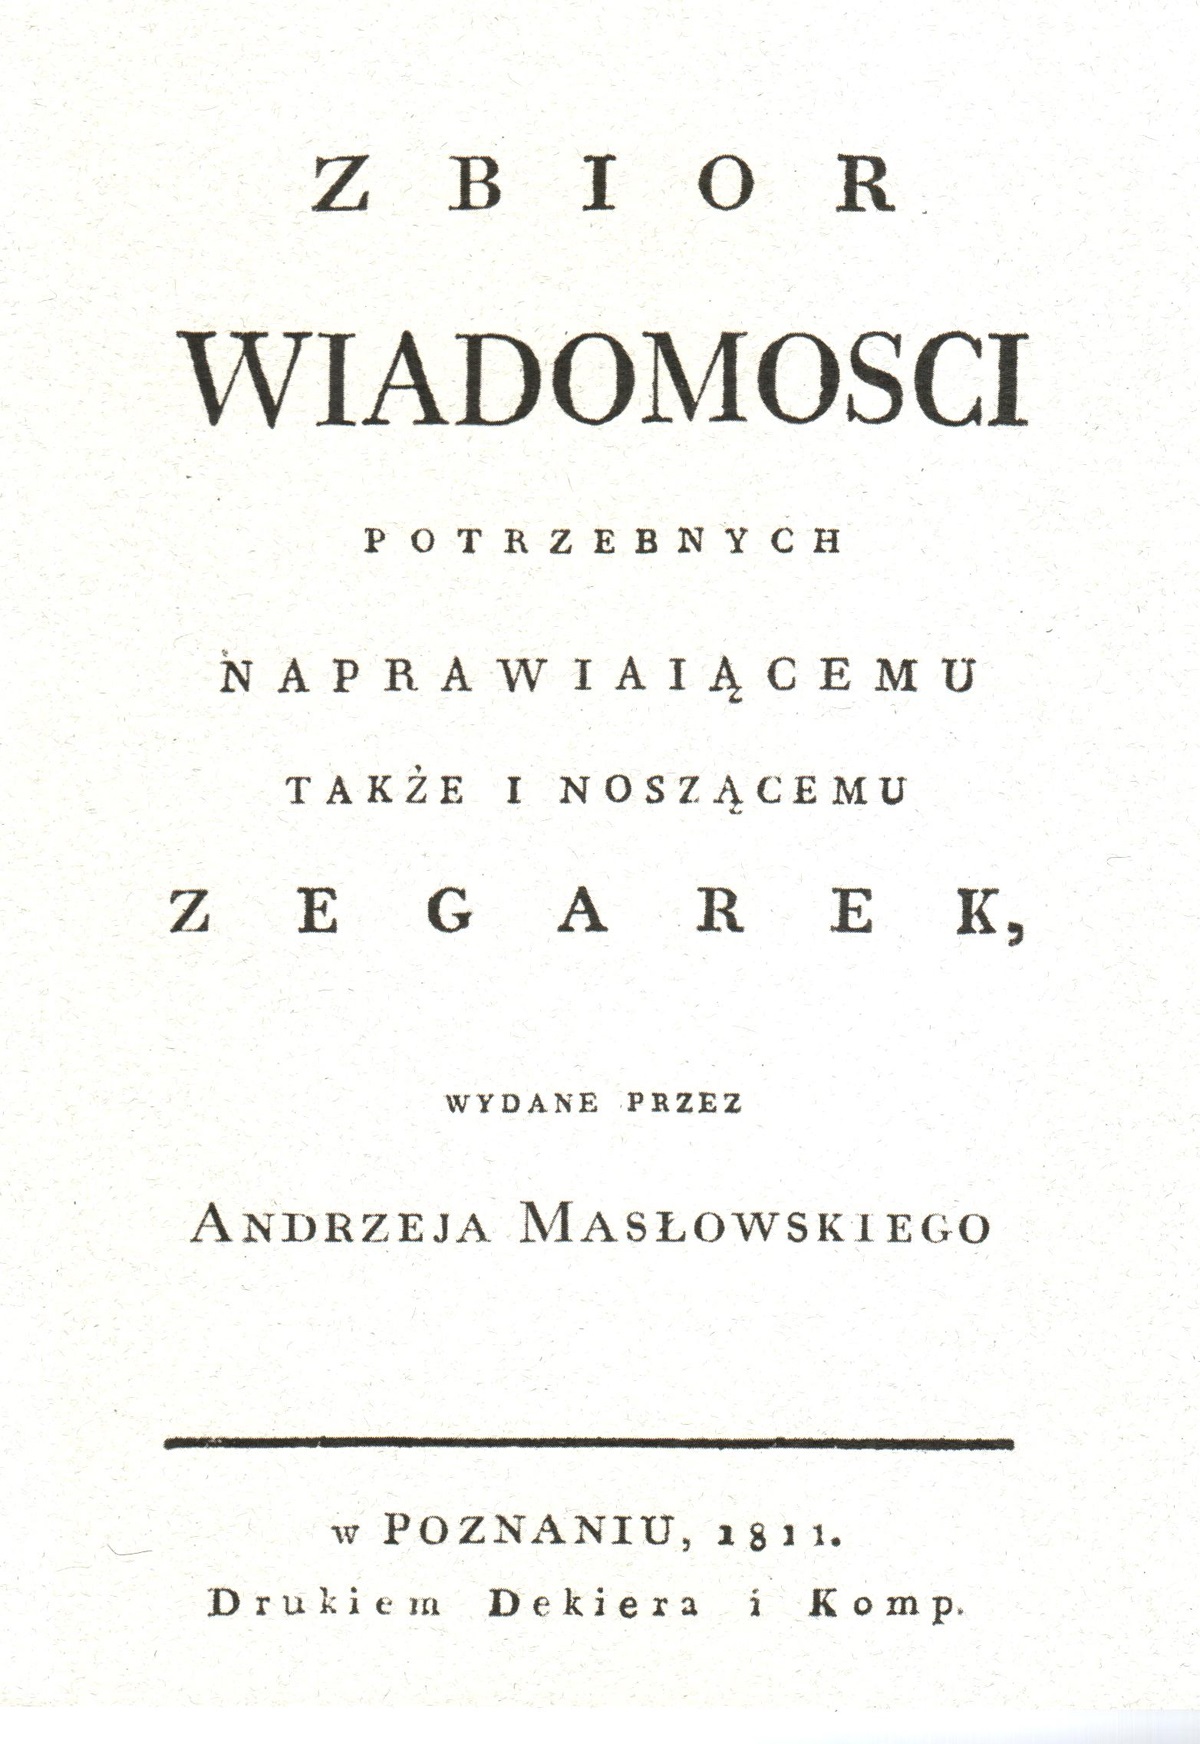 Andrzej Masłowski by Zygmunt Dolczewski